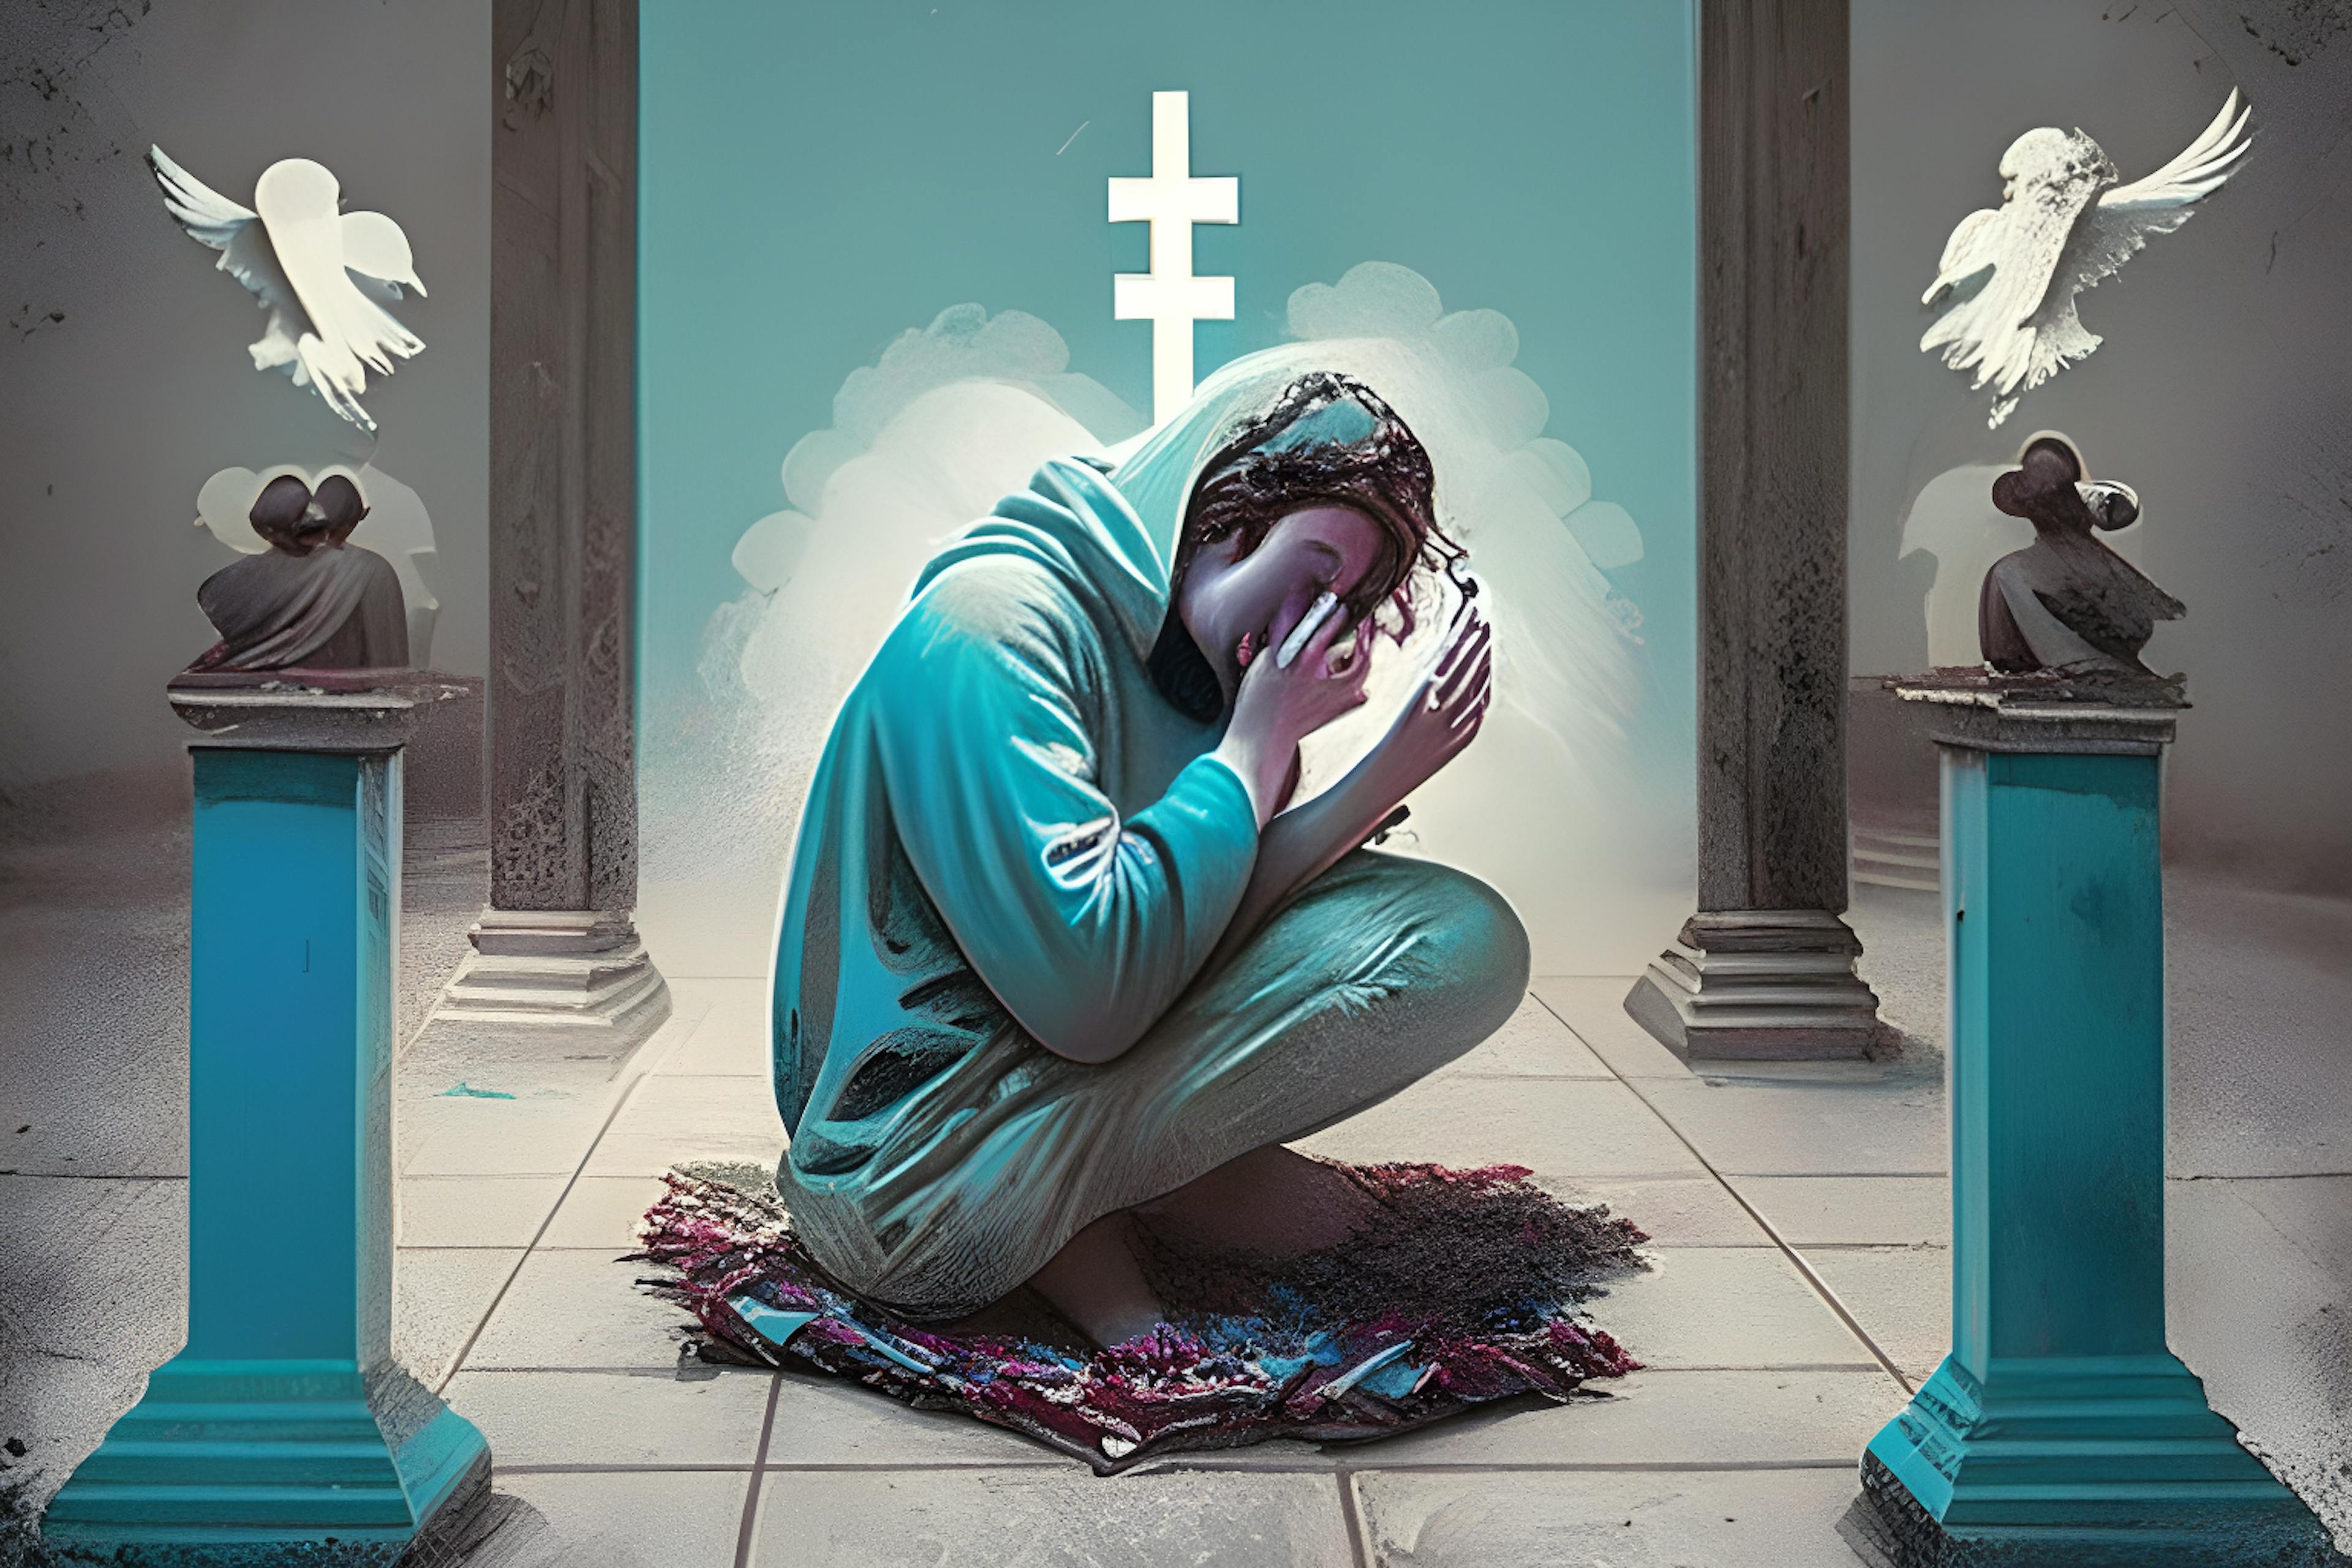 HackerNoon AI Image Generation, Prompt "Một người nghiện mạng xã hội đang cầu nguyện các vị thần"